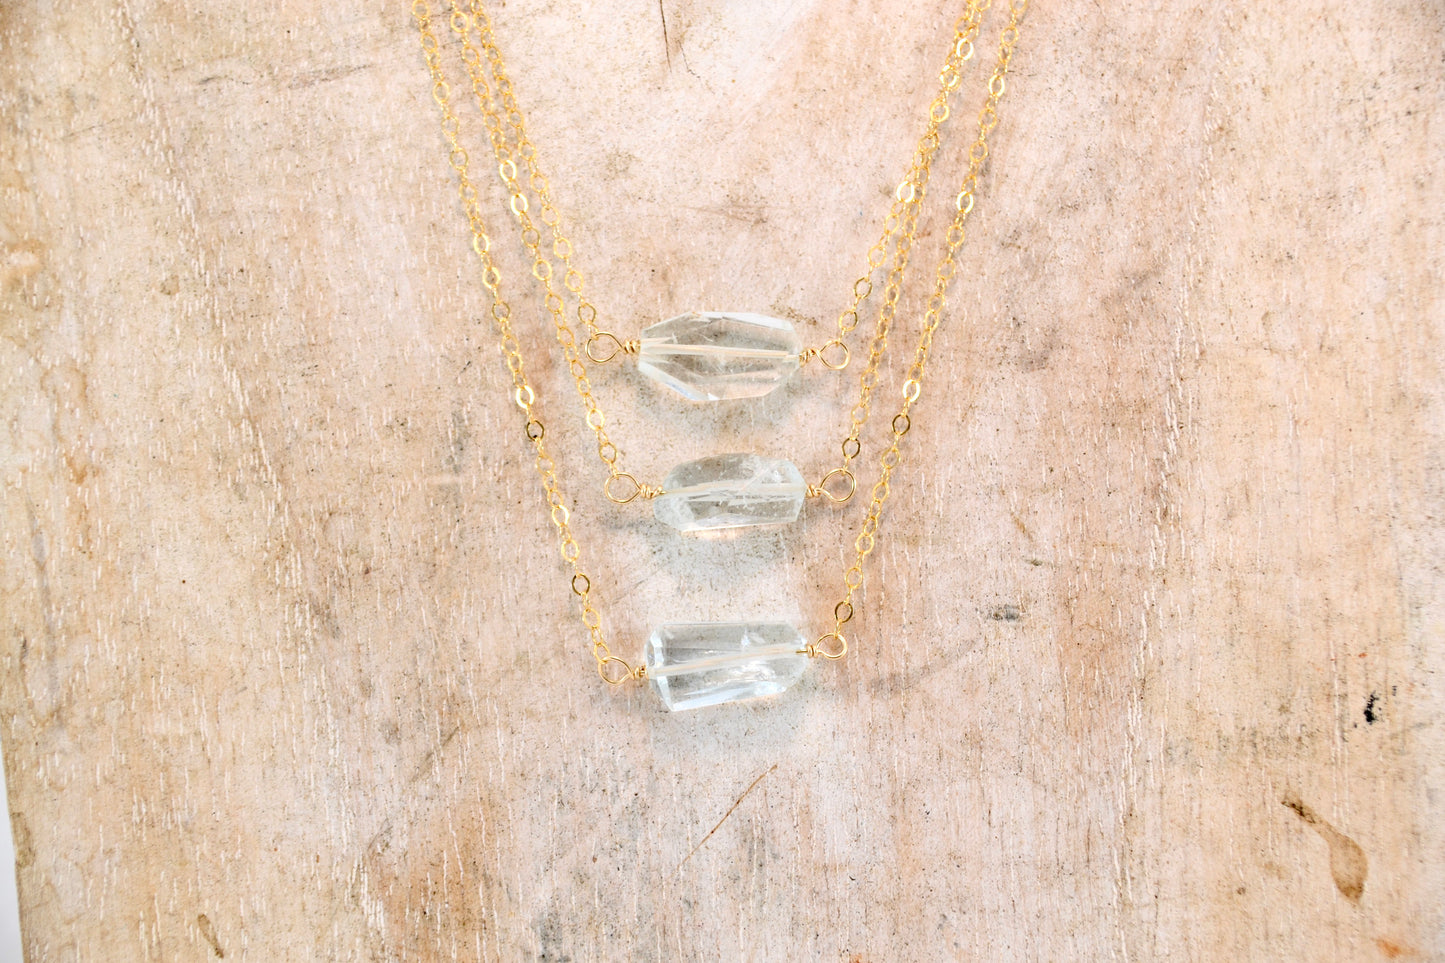 14K GF Dainty Aquamarine Necklace || March Birthstone